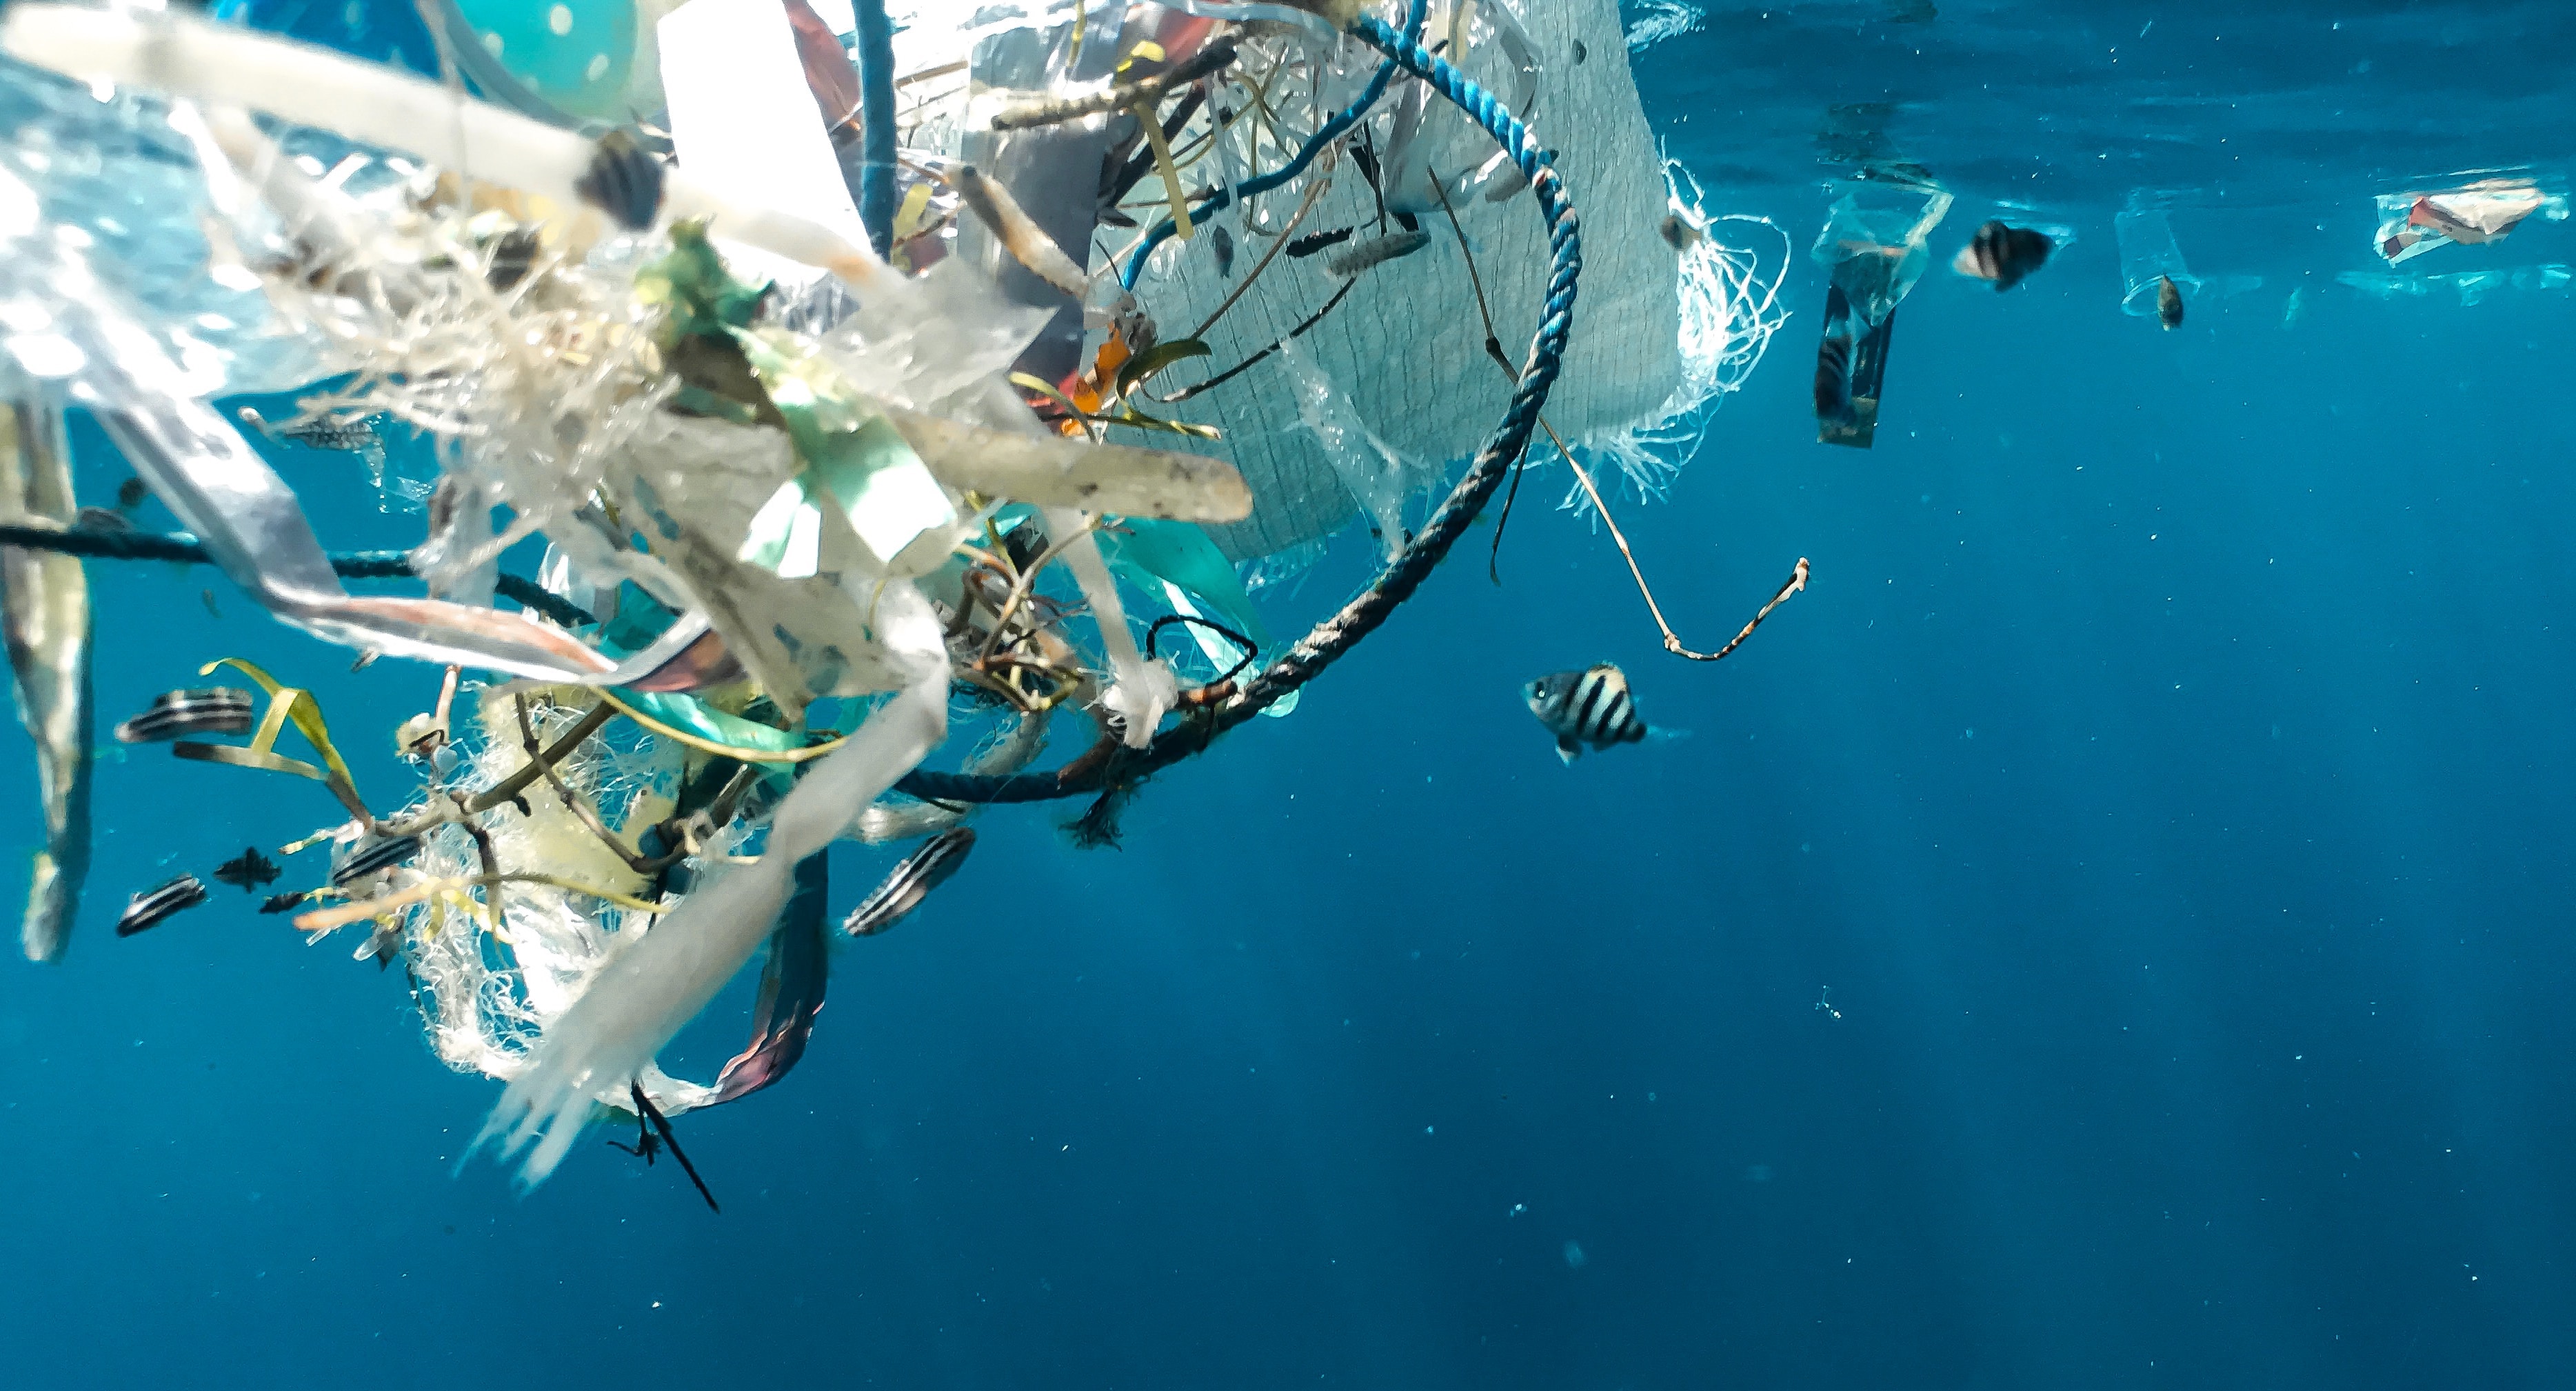 Морская жизнь «процветает» в Большом Тихоокеанском мусорном пятне,  говорится в исследовании Marine Industry News